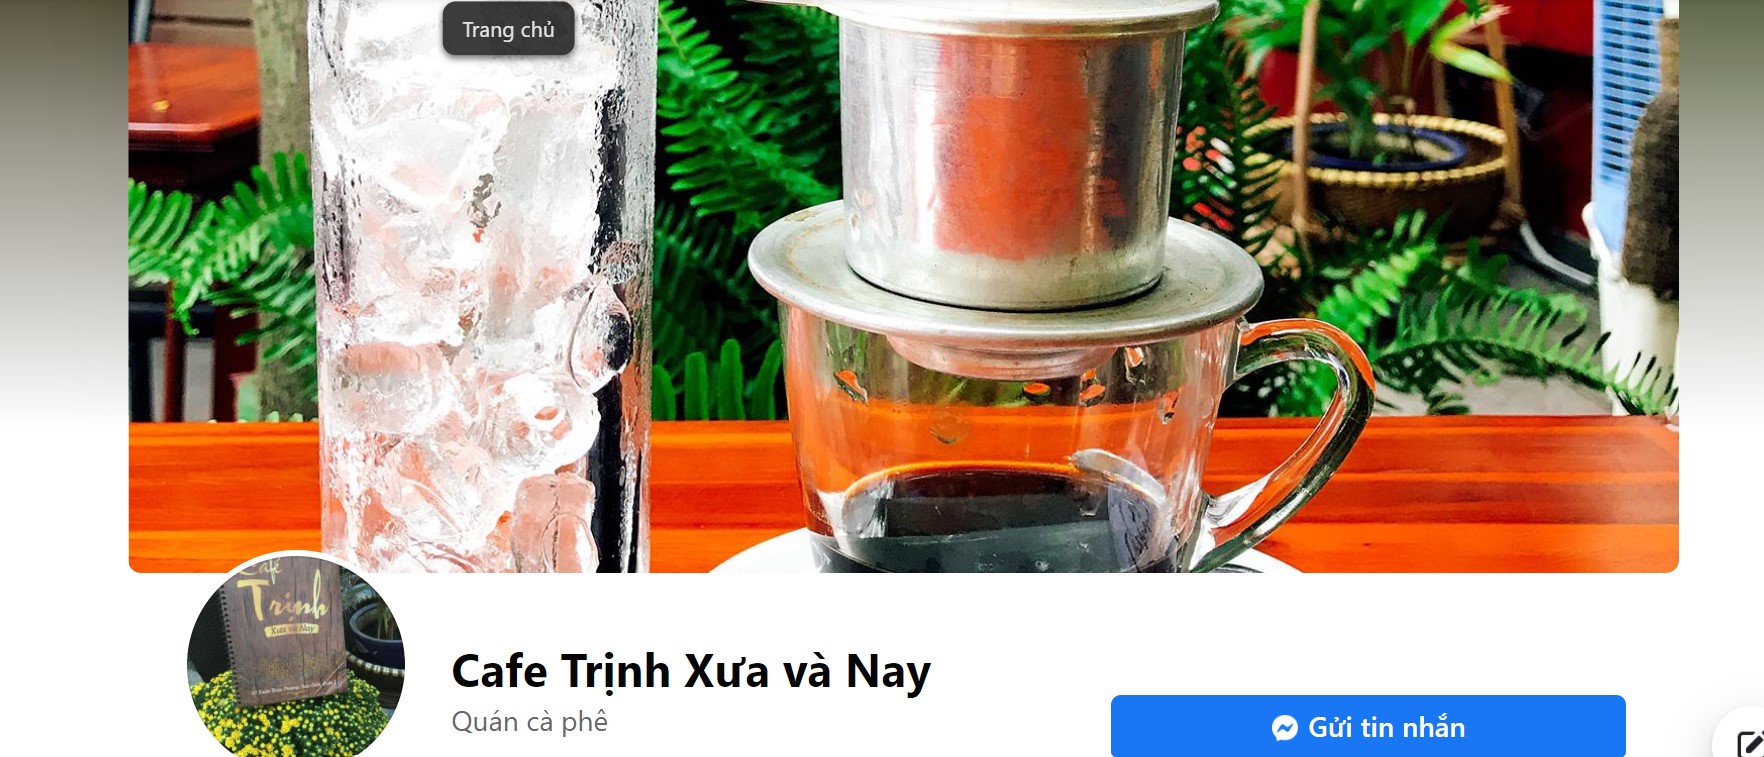 Cafe Trịnh xưa và nay